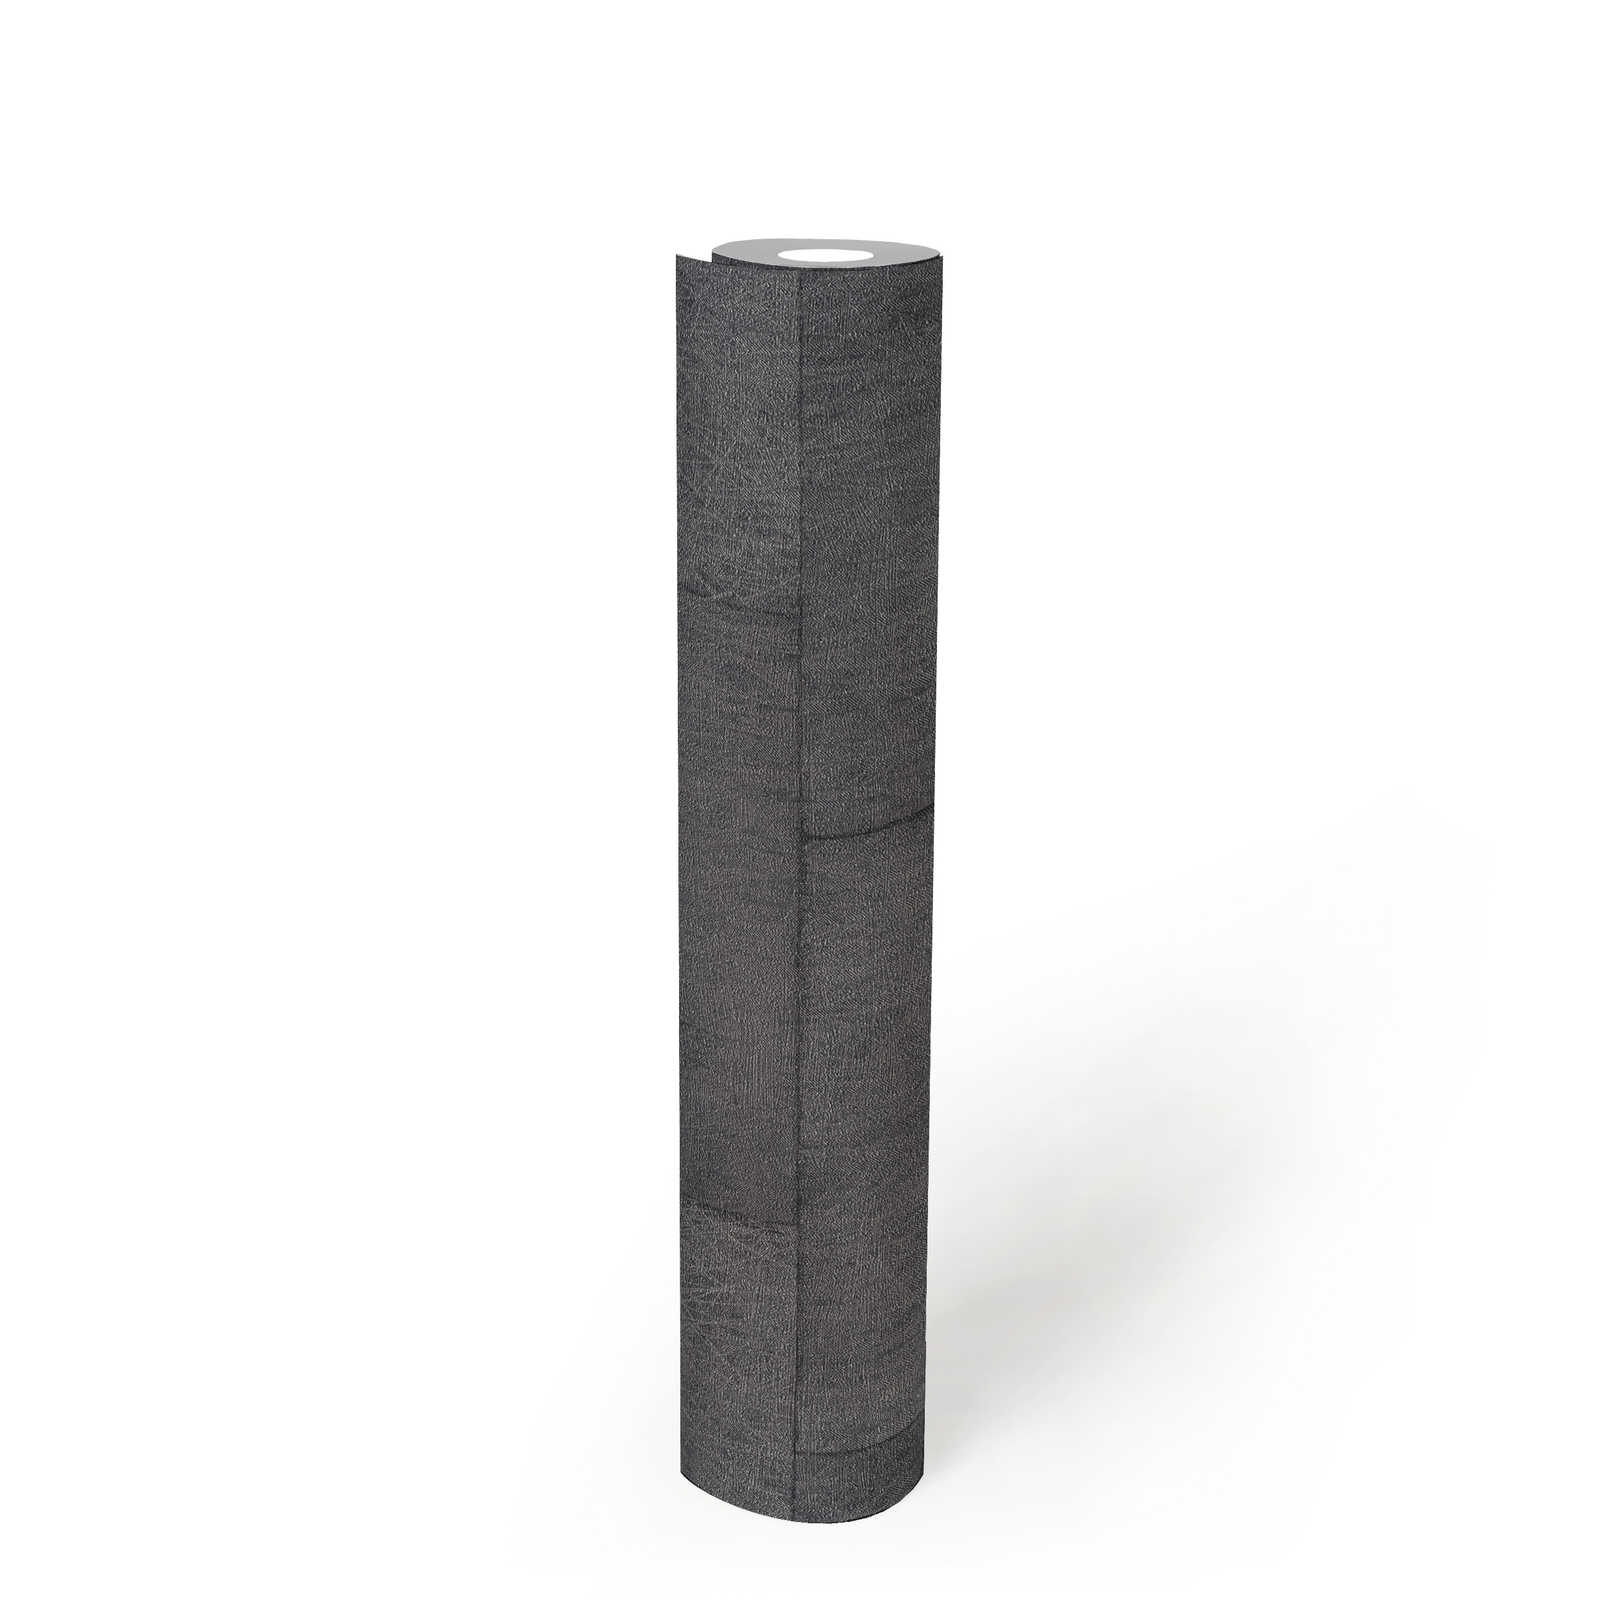             Baksteenbehang met structuureffect, glanzend - grijs, zwart
        